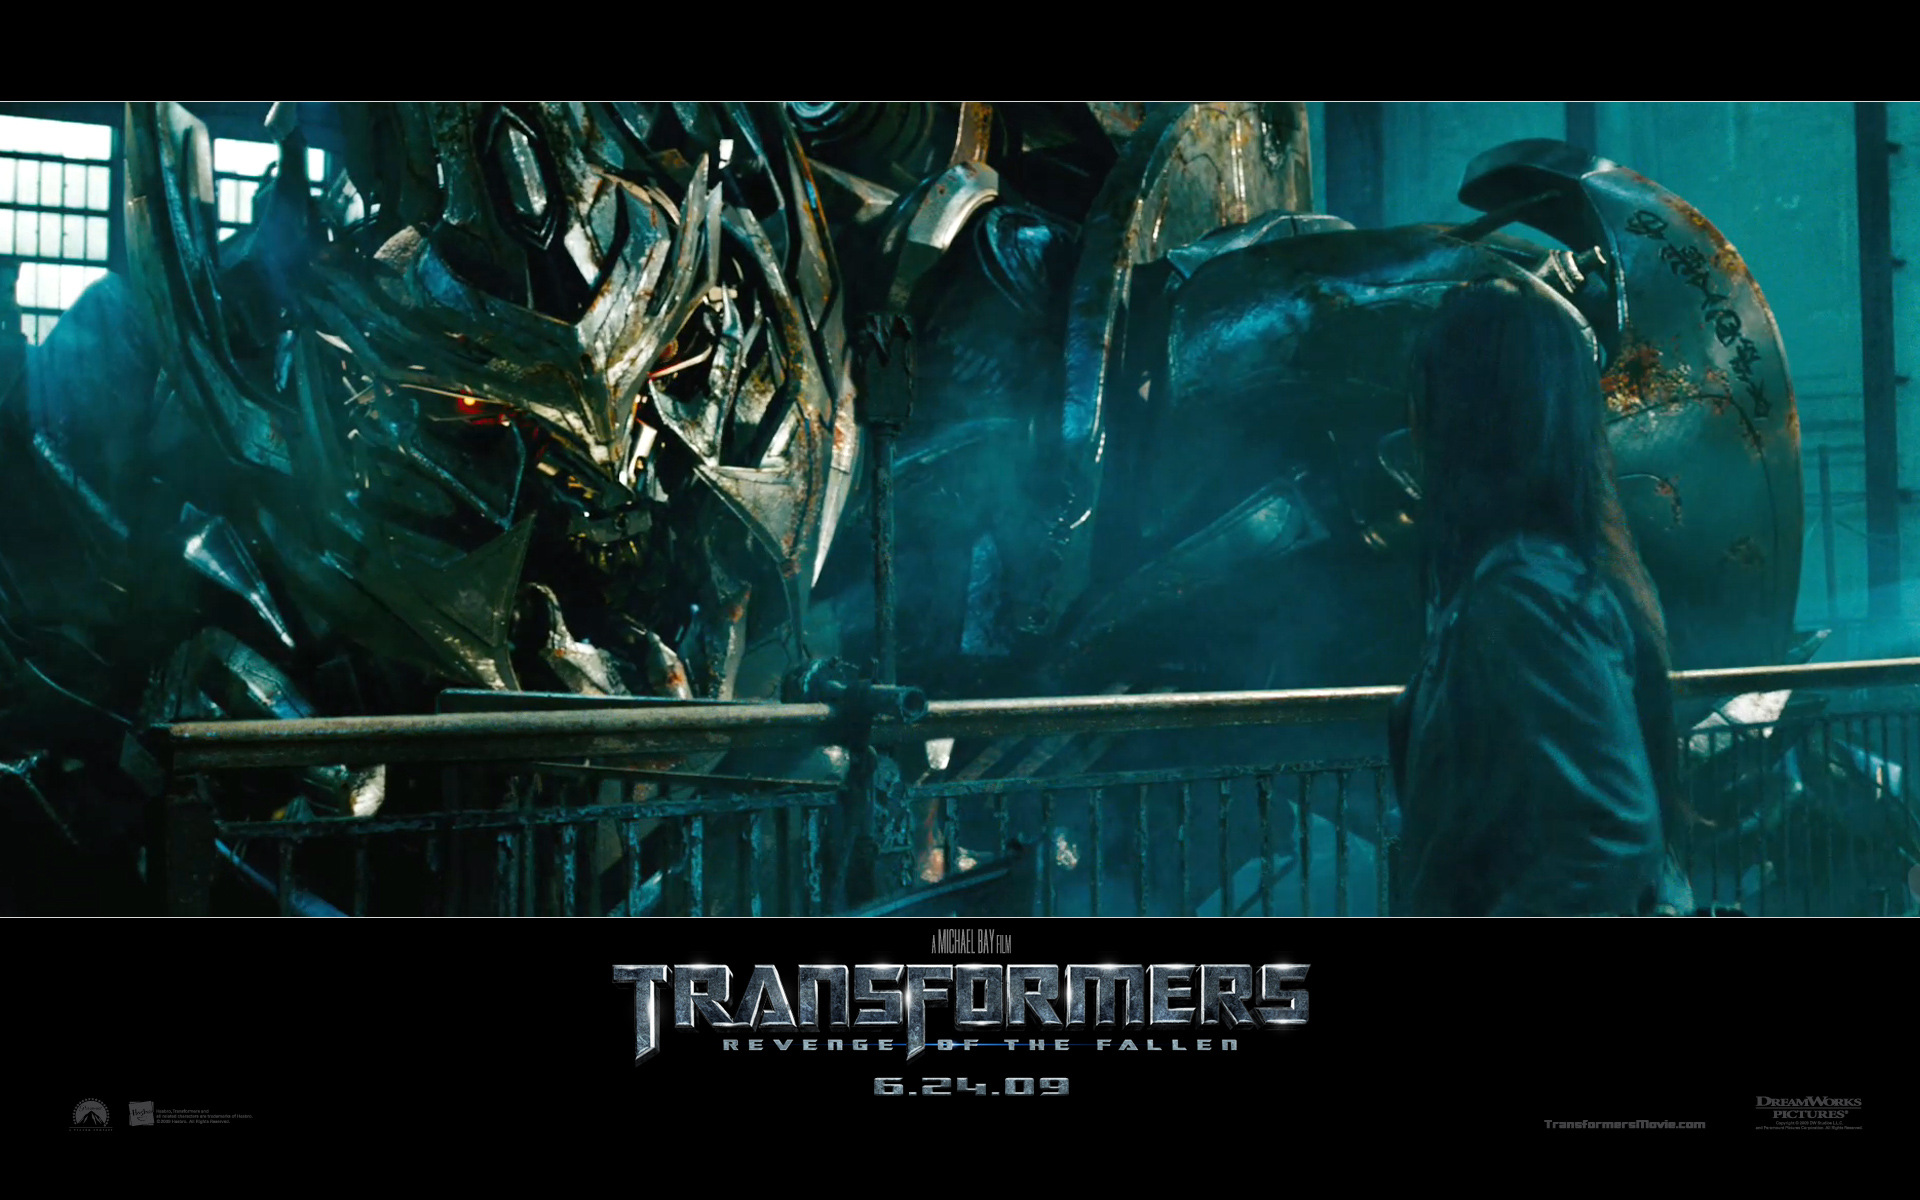 "Transformers: Revenge of the Fallen" desktop wallpaper number 2 (1920 x 1200 pixels)